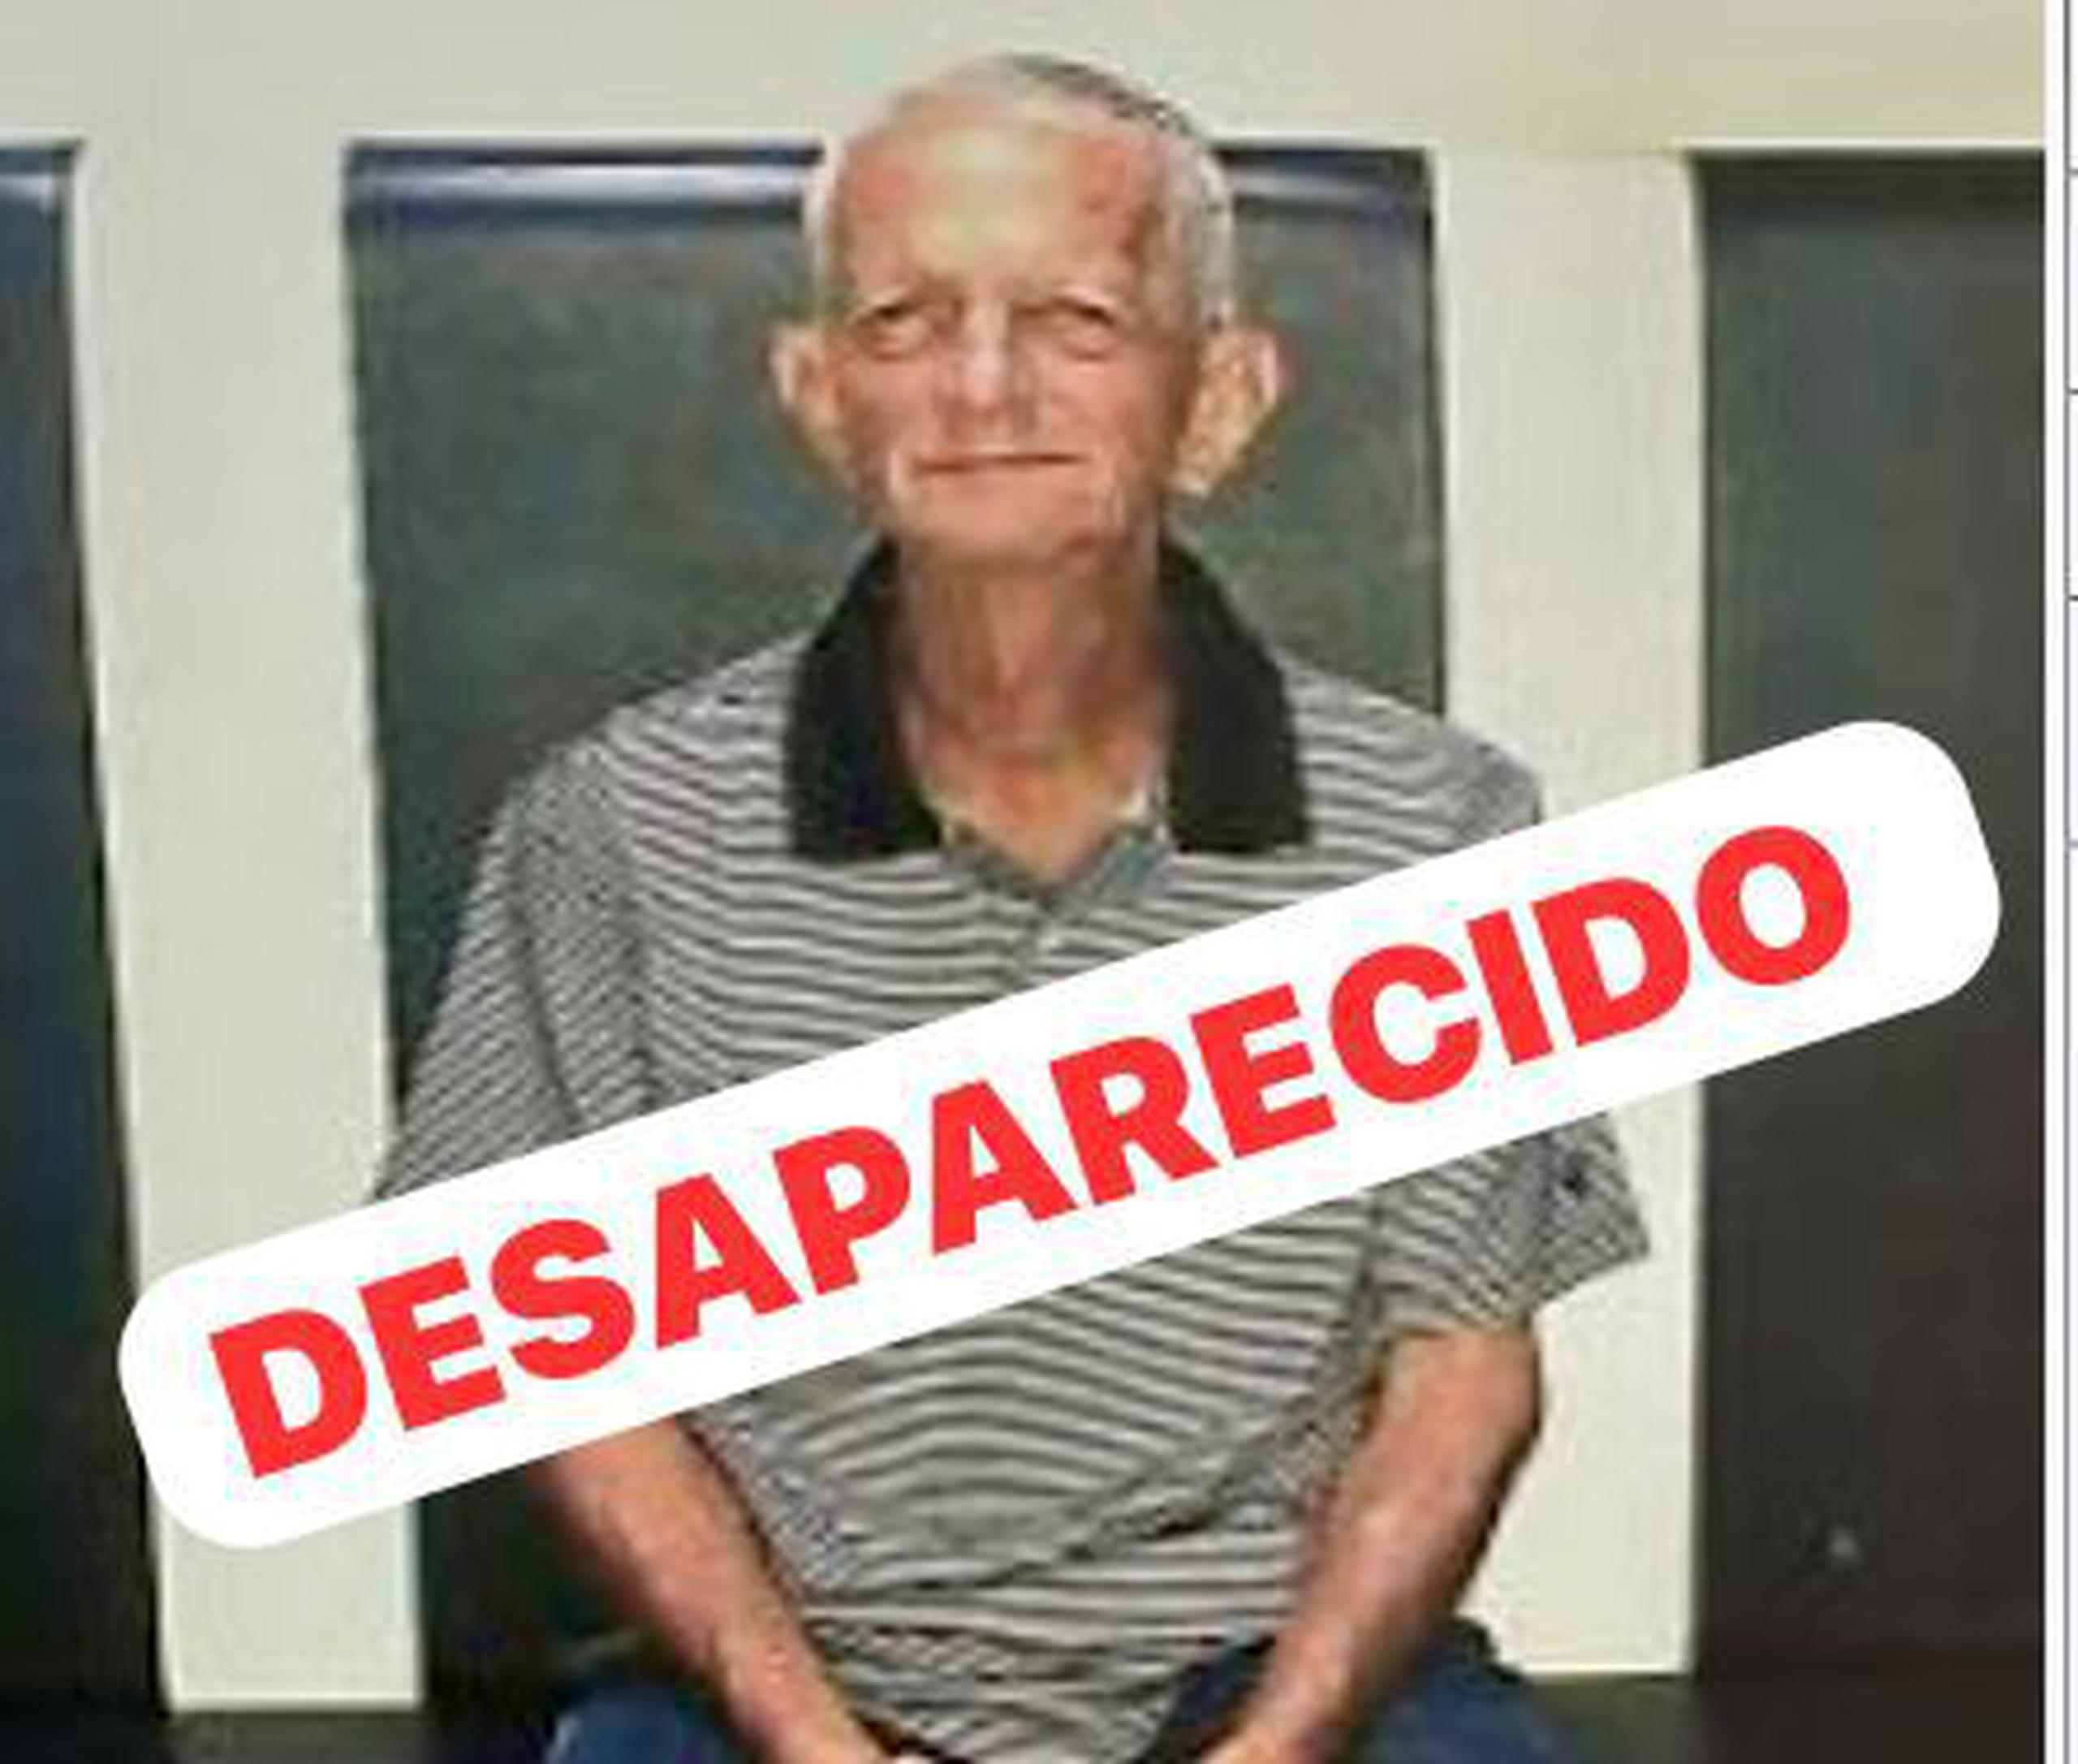 Eduardo Villafañe Cortés de 80 años, se encuentra desaparecido desde el 19 de abril, de la urbanización Víctor Rojas II, en Arecibo.